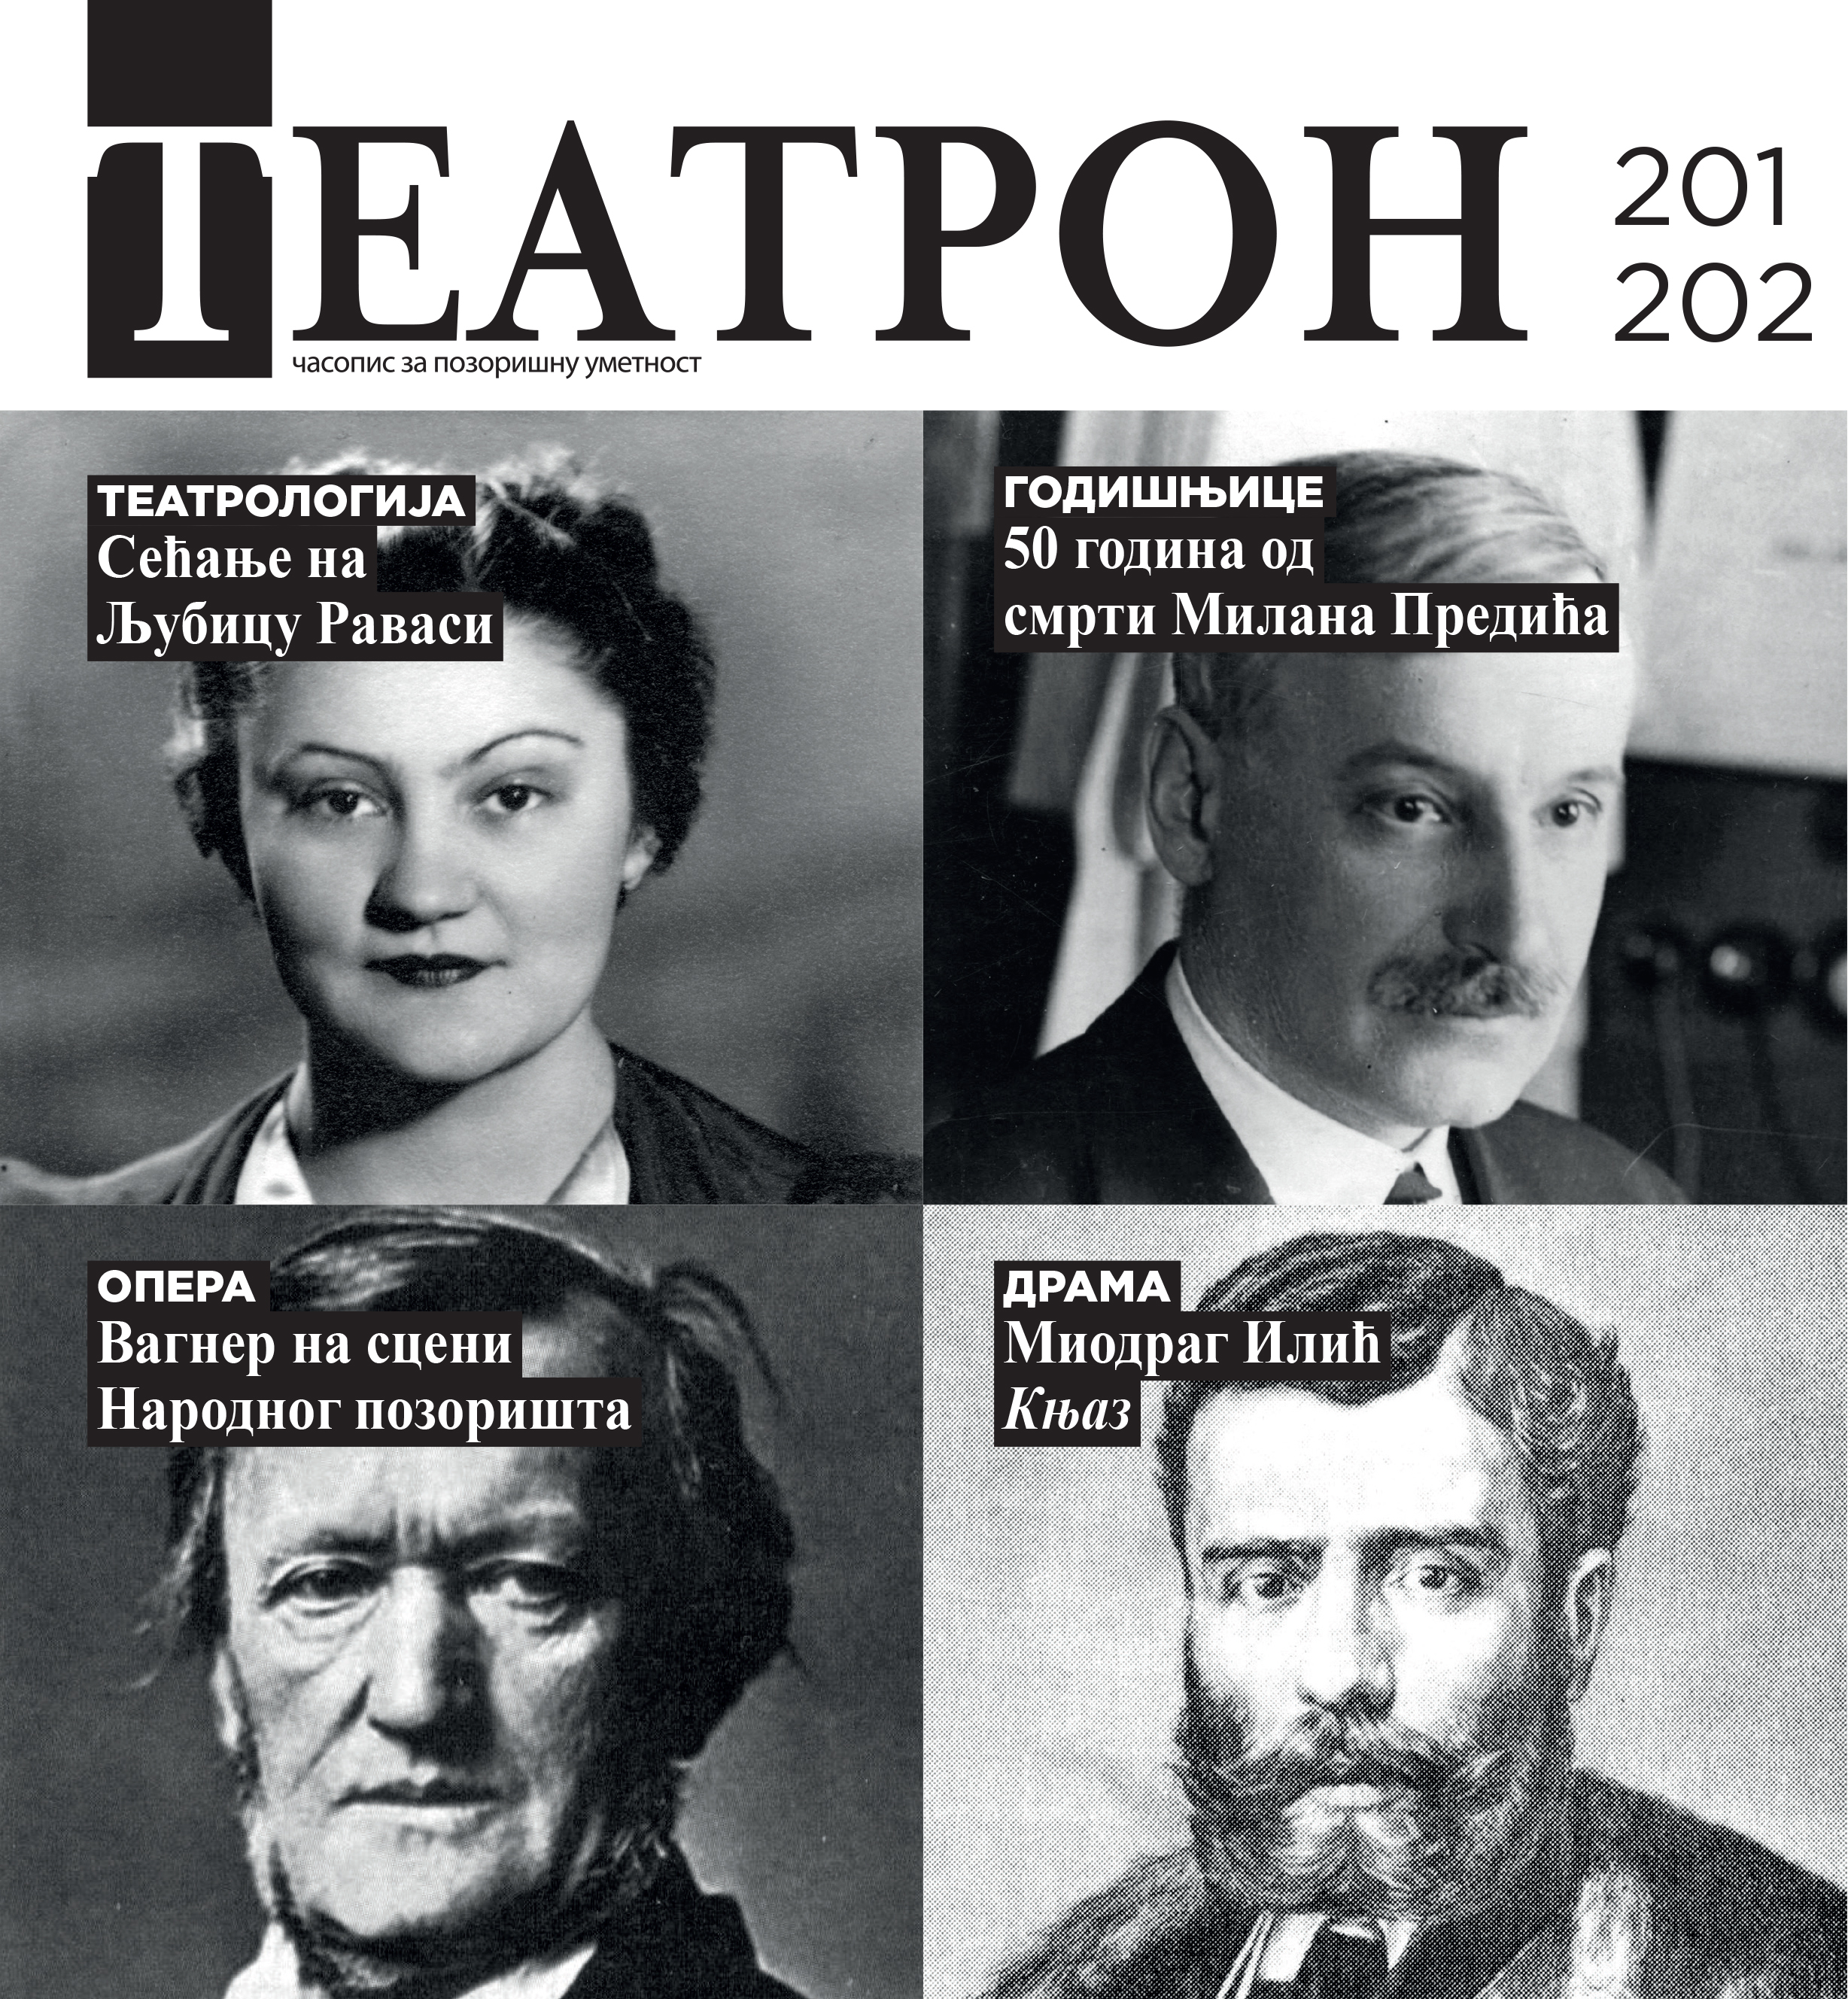 Dragoslav Mihailović (1930-2023) Cover Image